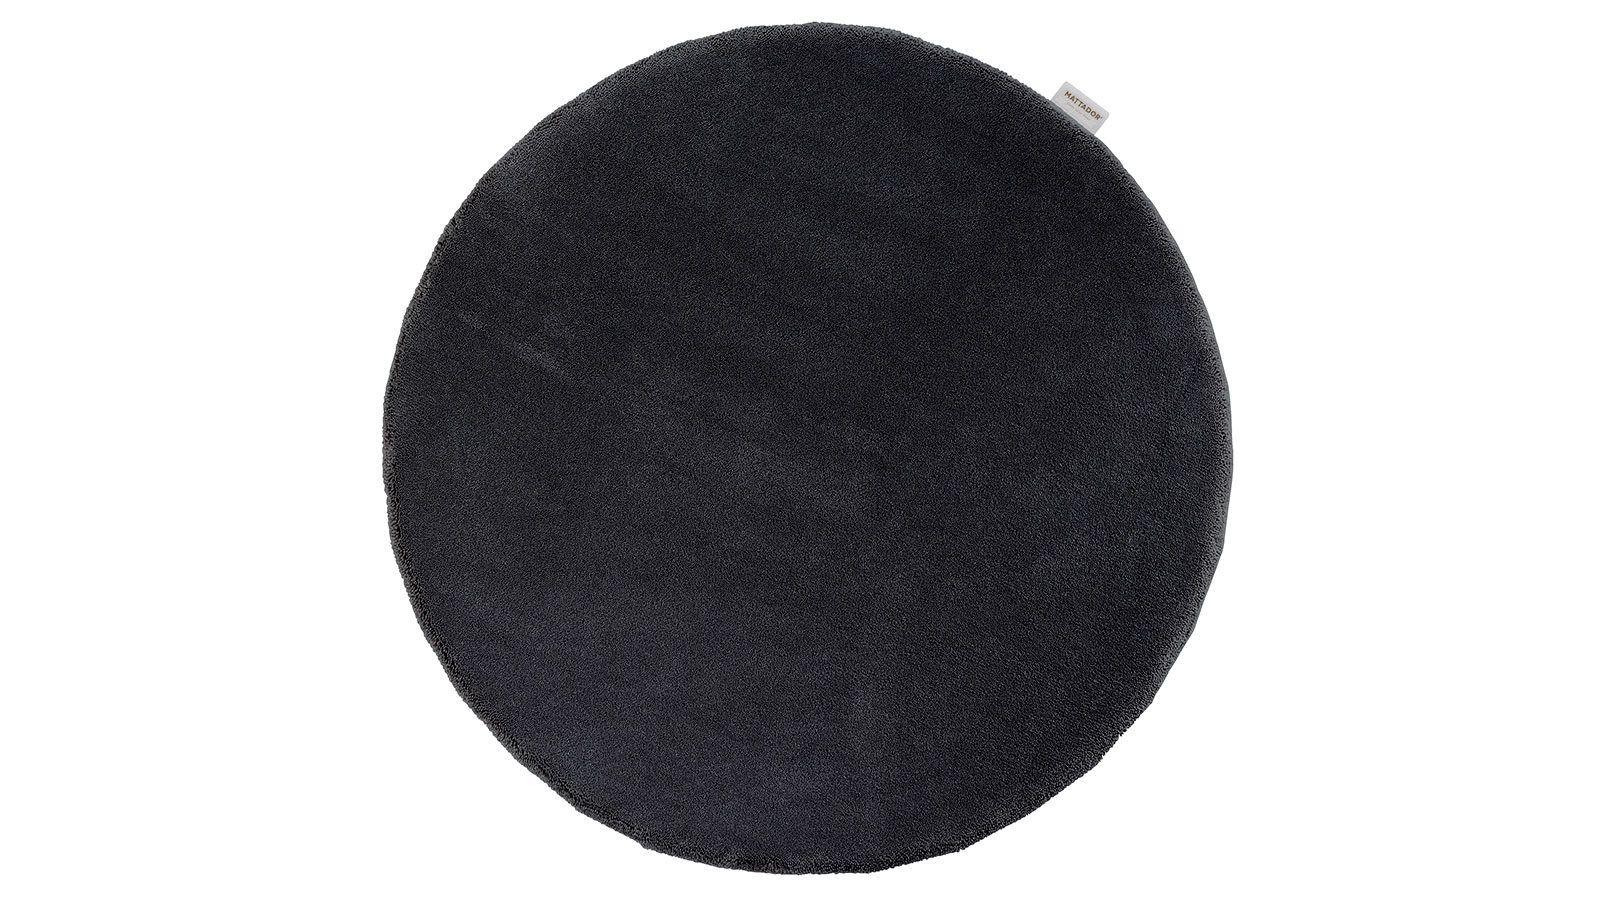 Bovenaanzicht van rond vloerkleed op maat in kleur zwart model Tuxedo